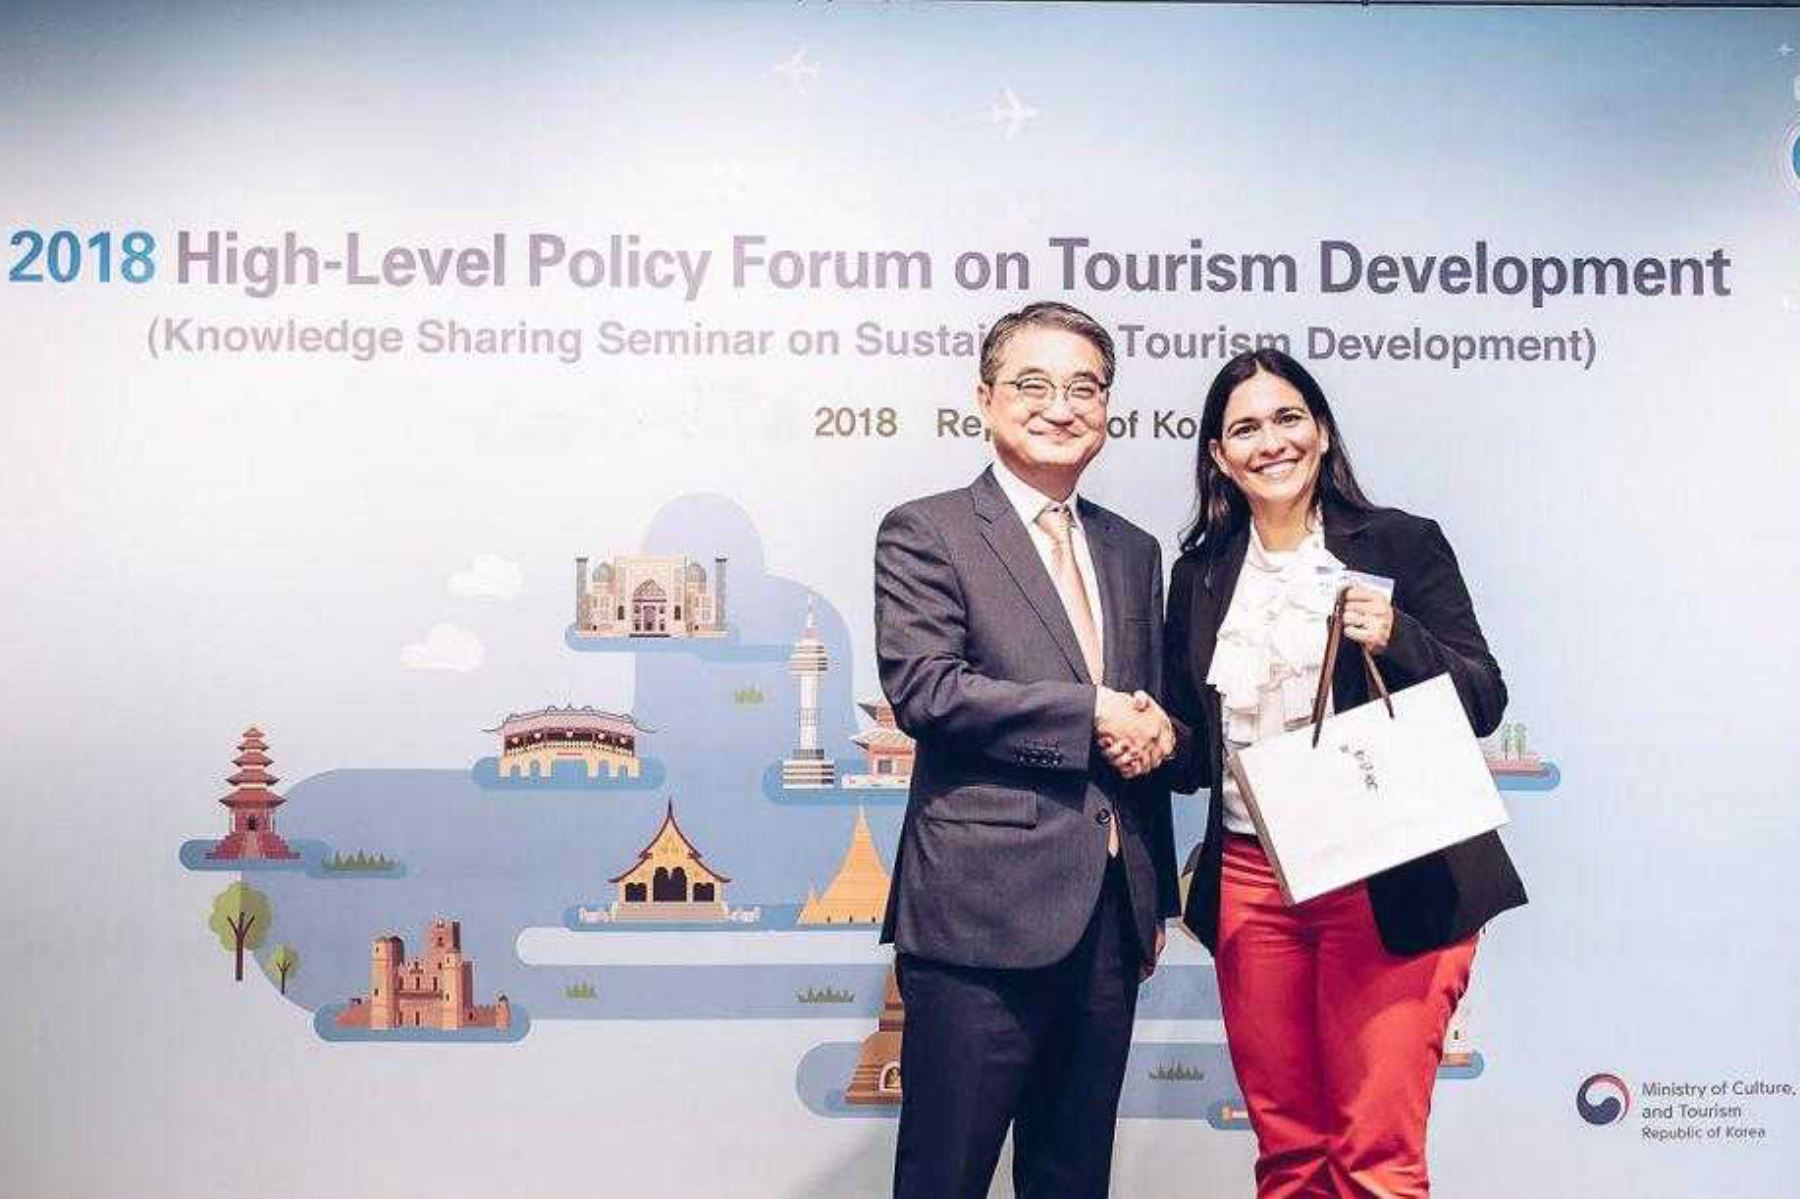 La viceministra de Turismo, Liz Chirinos, anunció hoy que el Perú fue reconocido como uno de los países que mejor elaboran planes de turismo, al obtener el segundo lugar en la competencia Gold Award for Best Action Plan, realizada en Corea del Sur, en el marco del “Foro de Alto Nivel y Seminario de Intercambio de Conocimientos sobre el Desarrollo del Turismo Sostenible”.